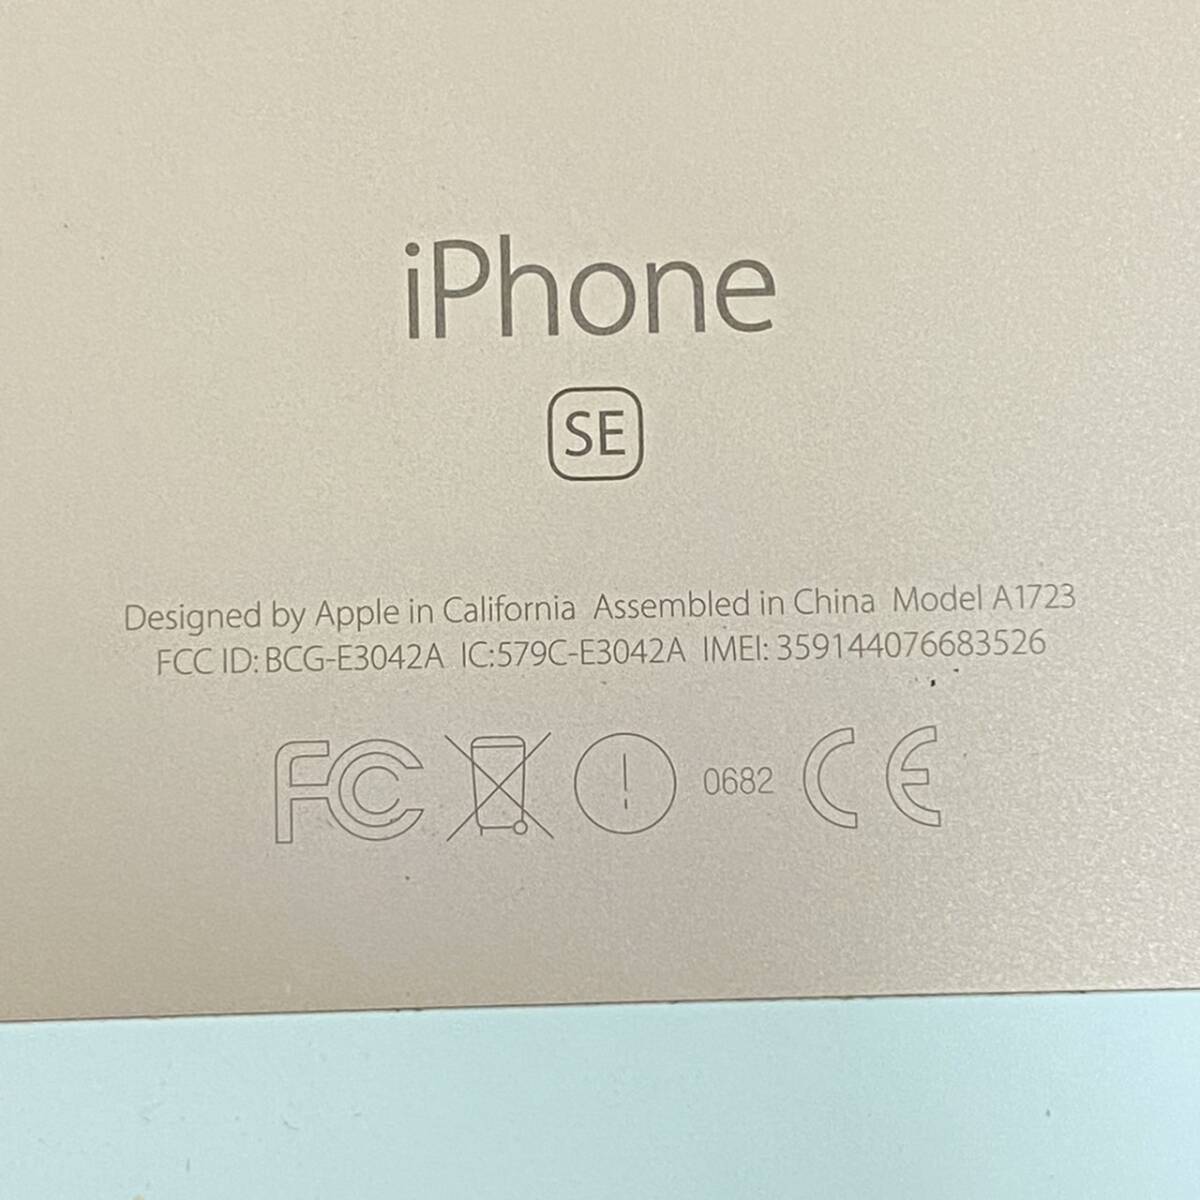 Apple アップル iPhone アイフォン SE A1723 ゴールド シルバー ピンク スマホ スマートフォン 10台 まとめの画像3